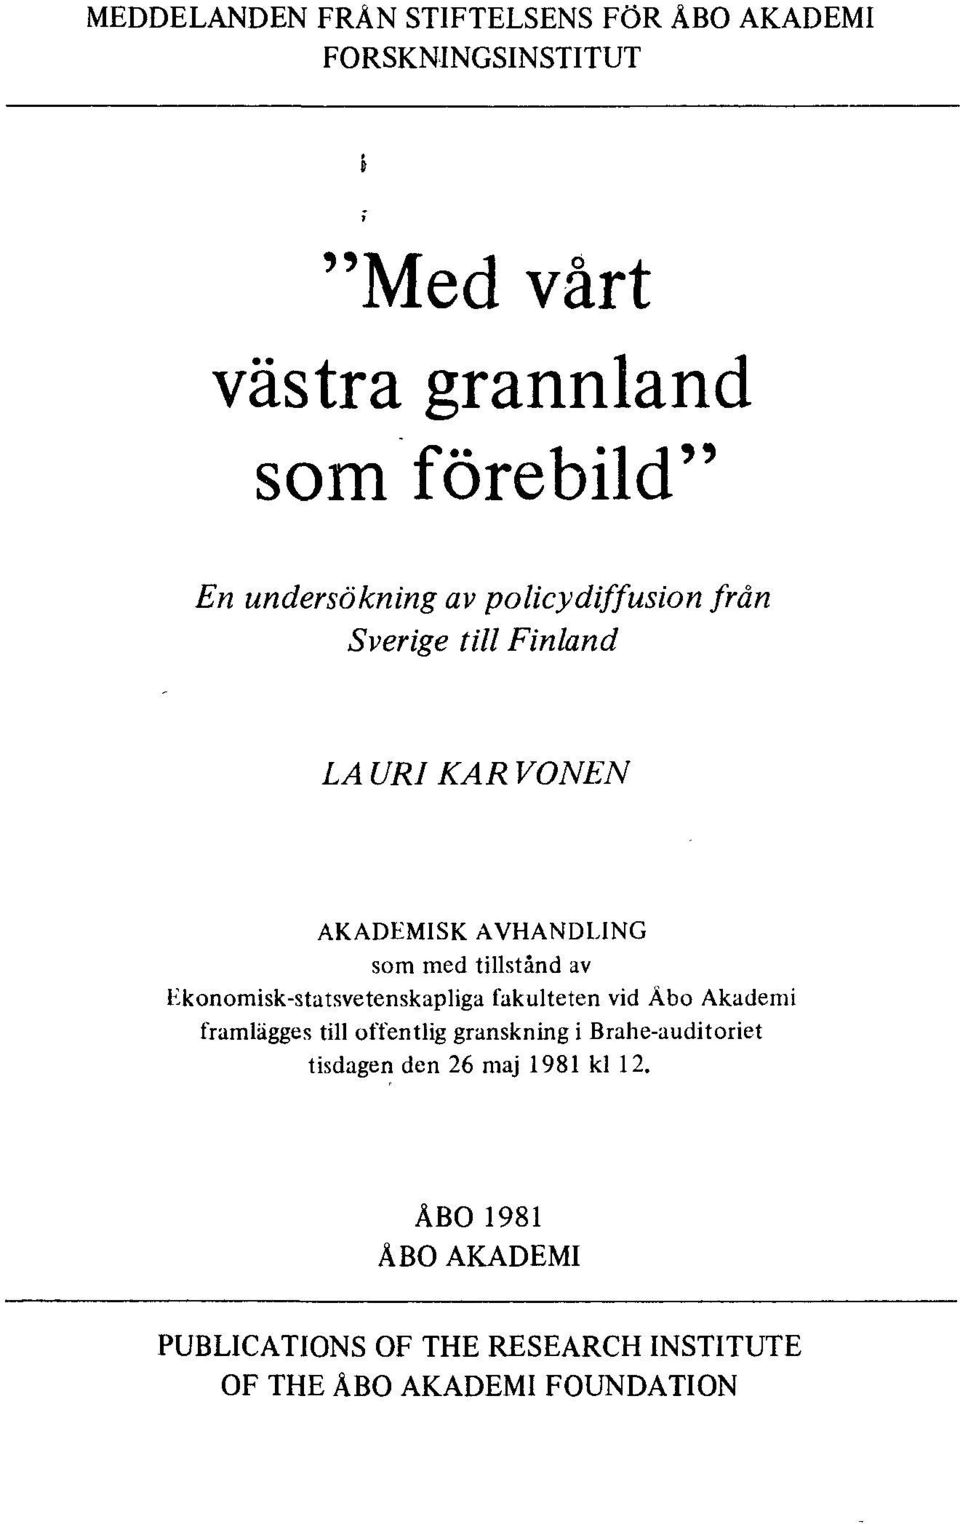 av Ekonomisk-statsvetenskapliga fakulteten vid Åbo Akademi framlägges till offentlig granskning i Brahe-auditoriet